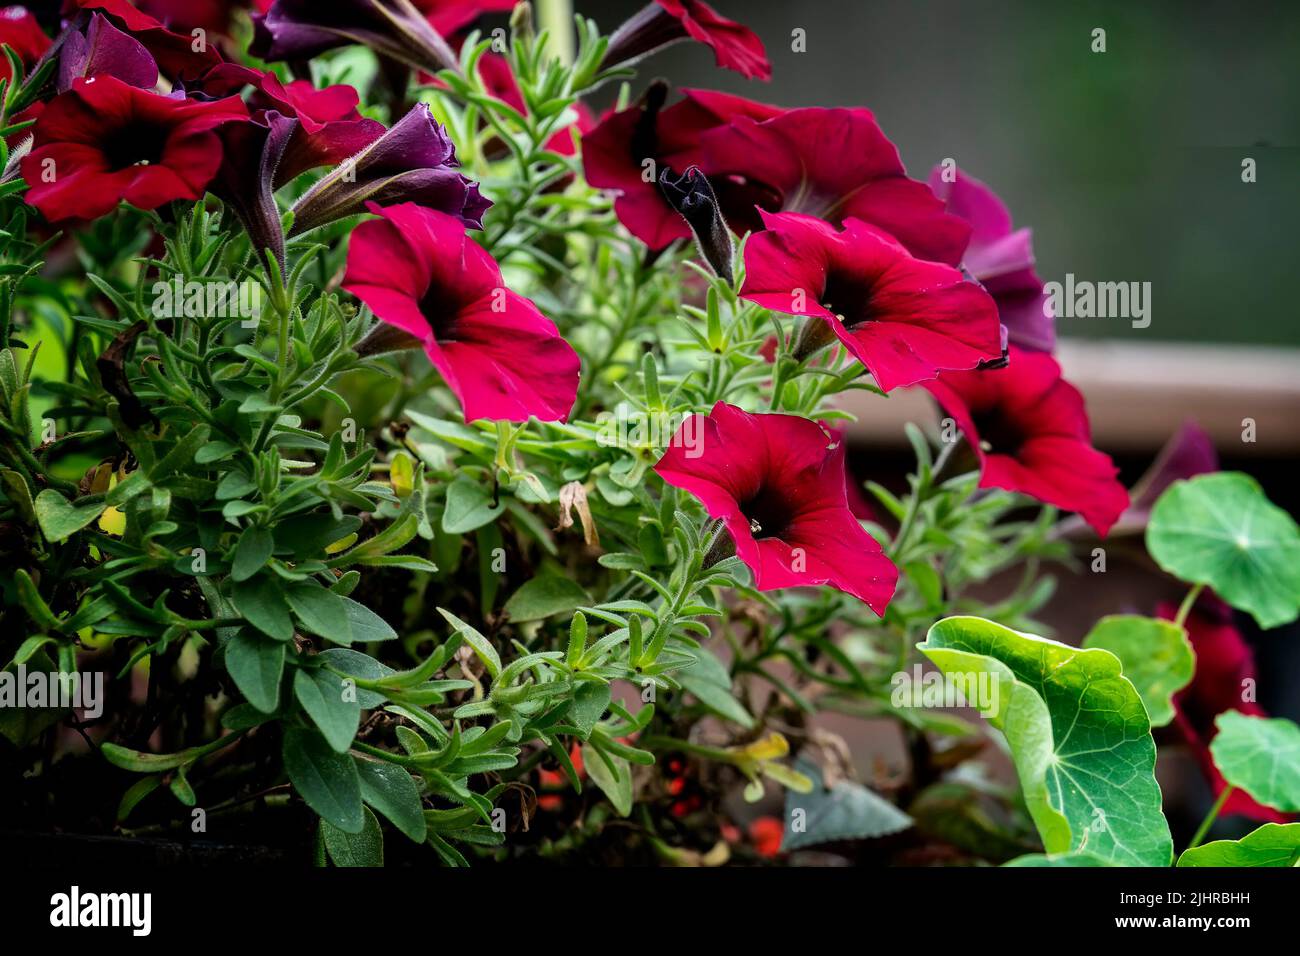 Petunias and Nasturtiums growing together Stock Photo